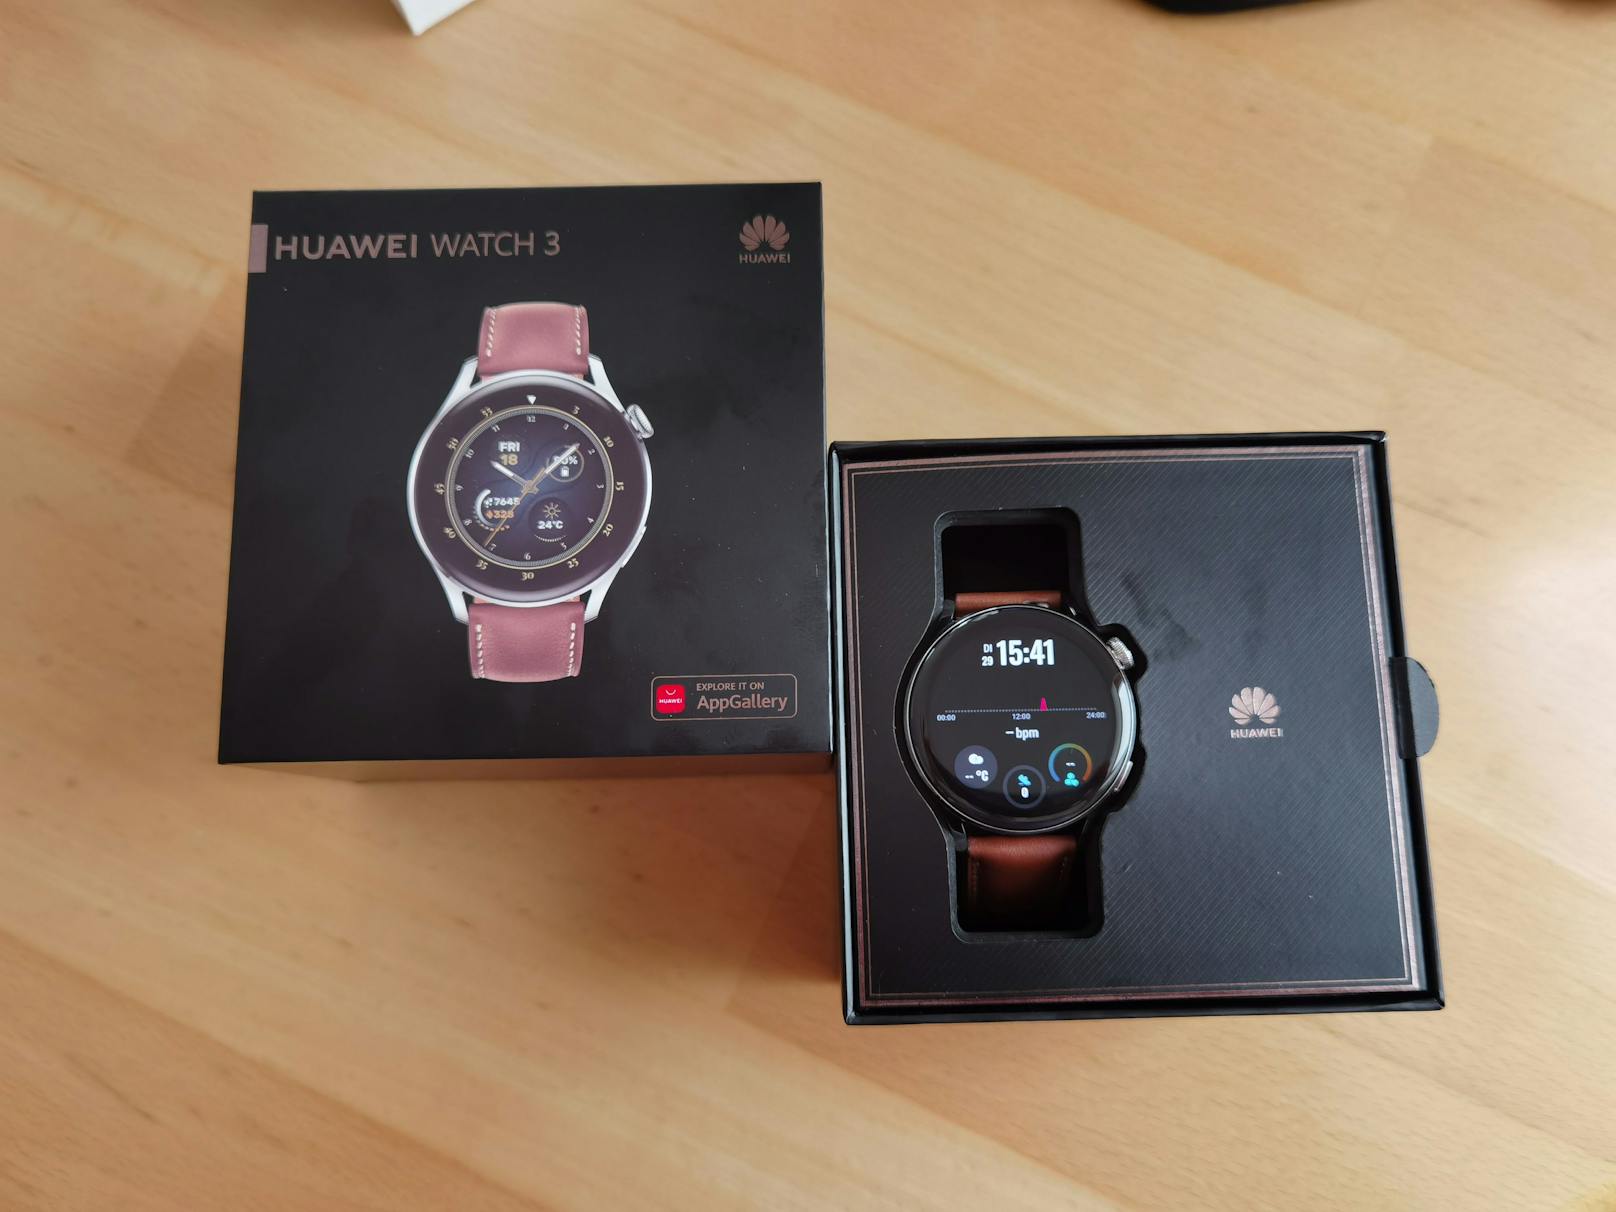 Huawei Watch 3 in eleganter Verpackung